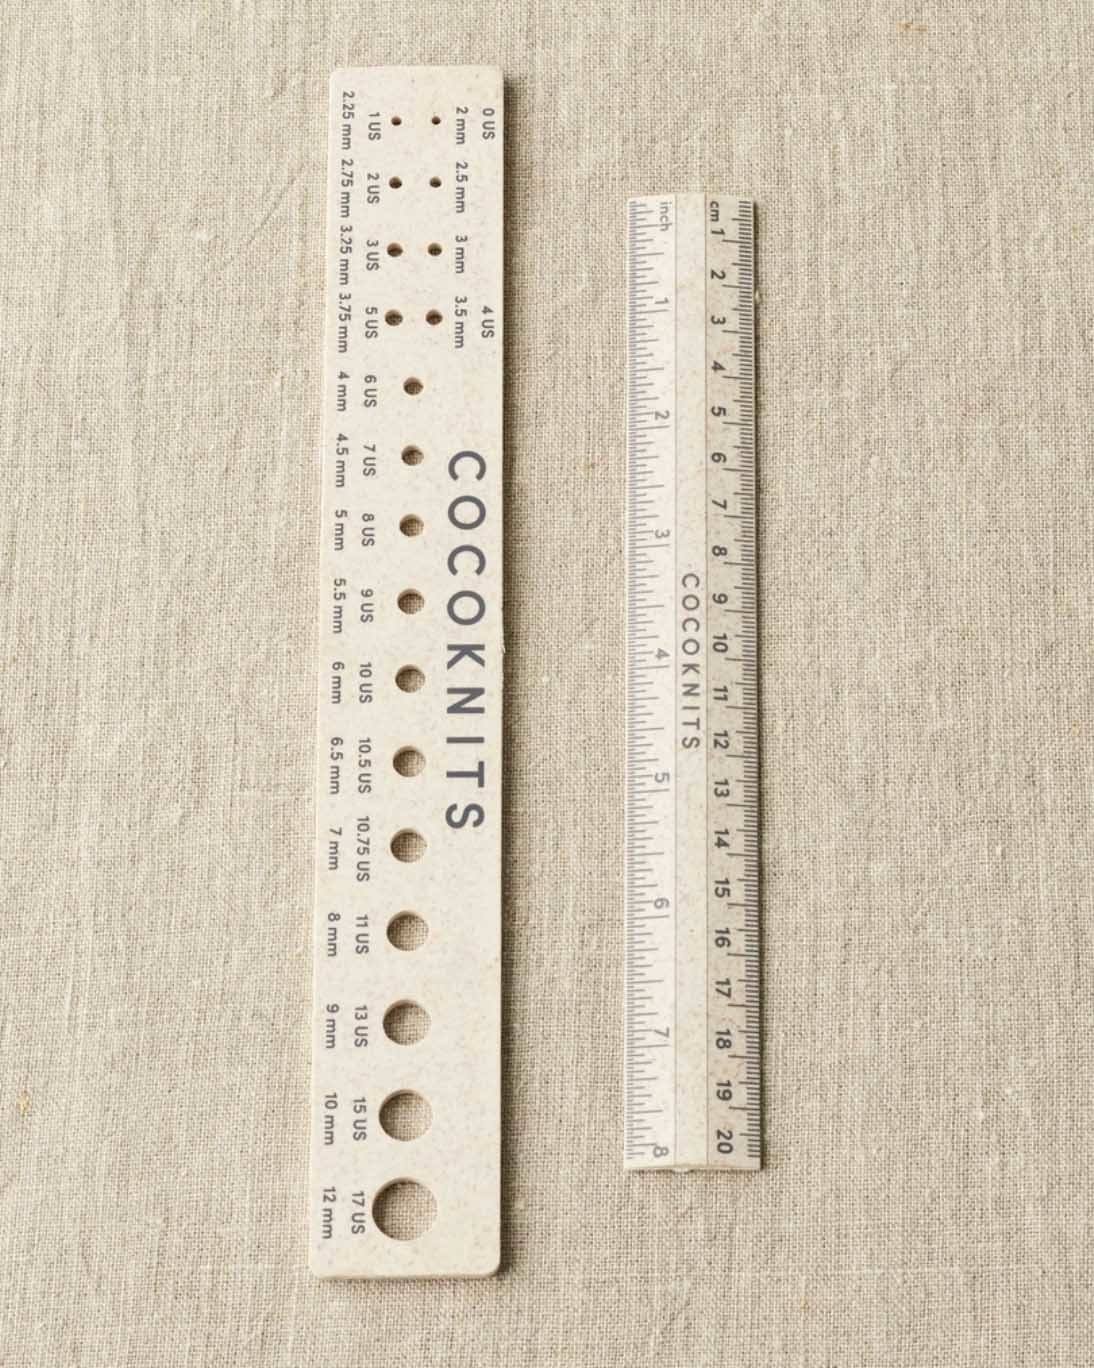 Needle Gauge Ruler Set